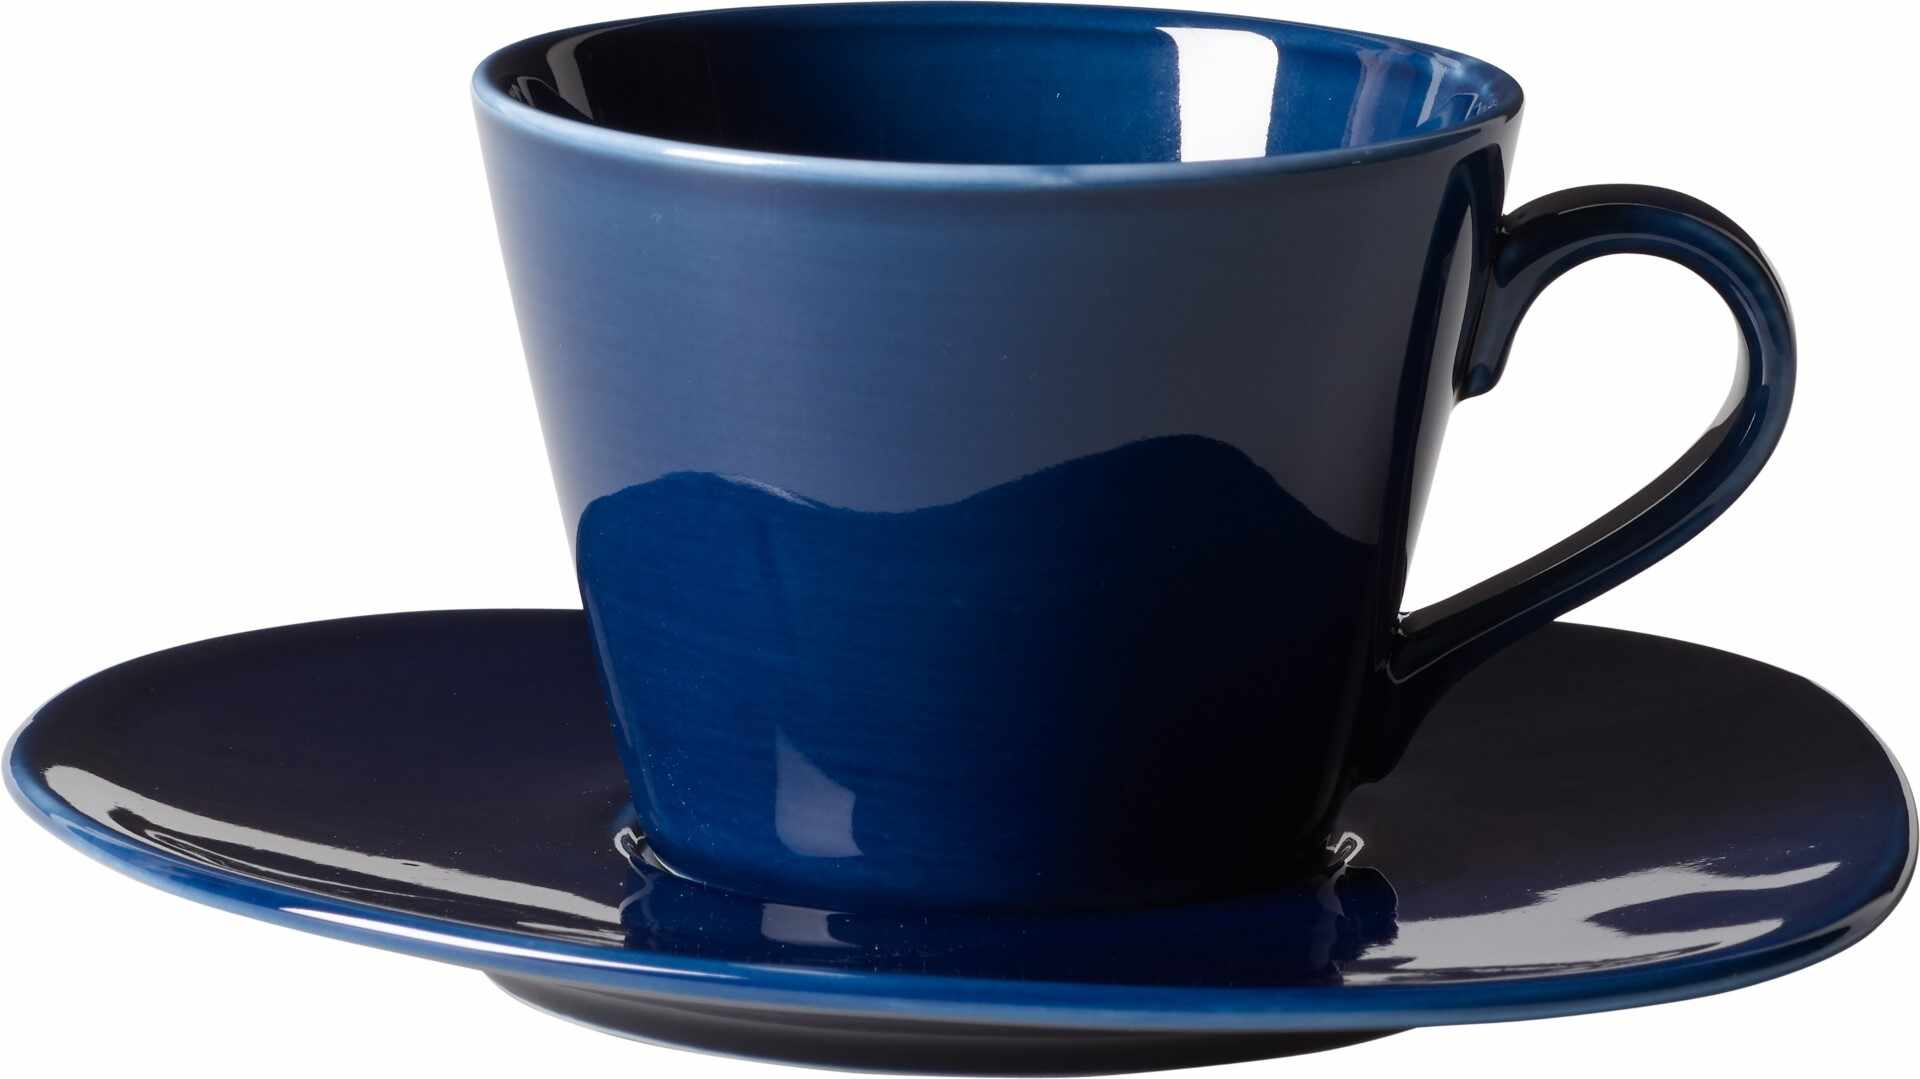 Ceasca si farfuriuta cafea like. By Villeroy & Boch Organic Dark Blue 0.27 litri